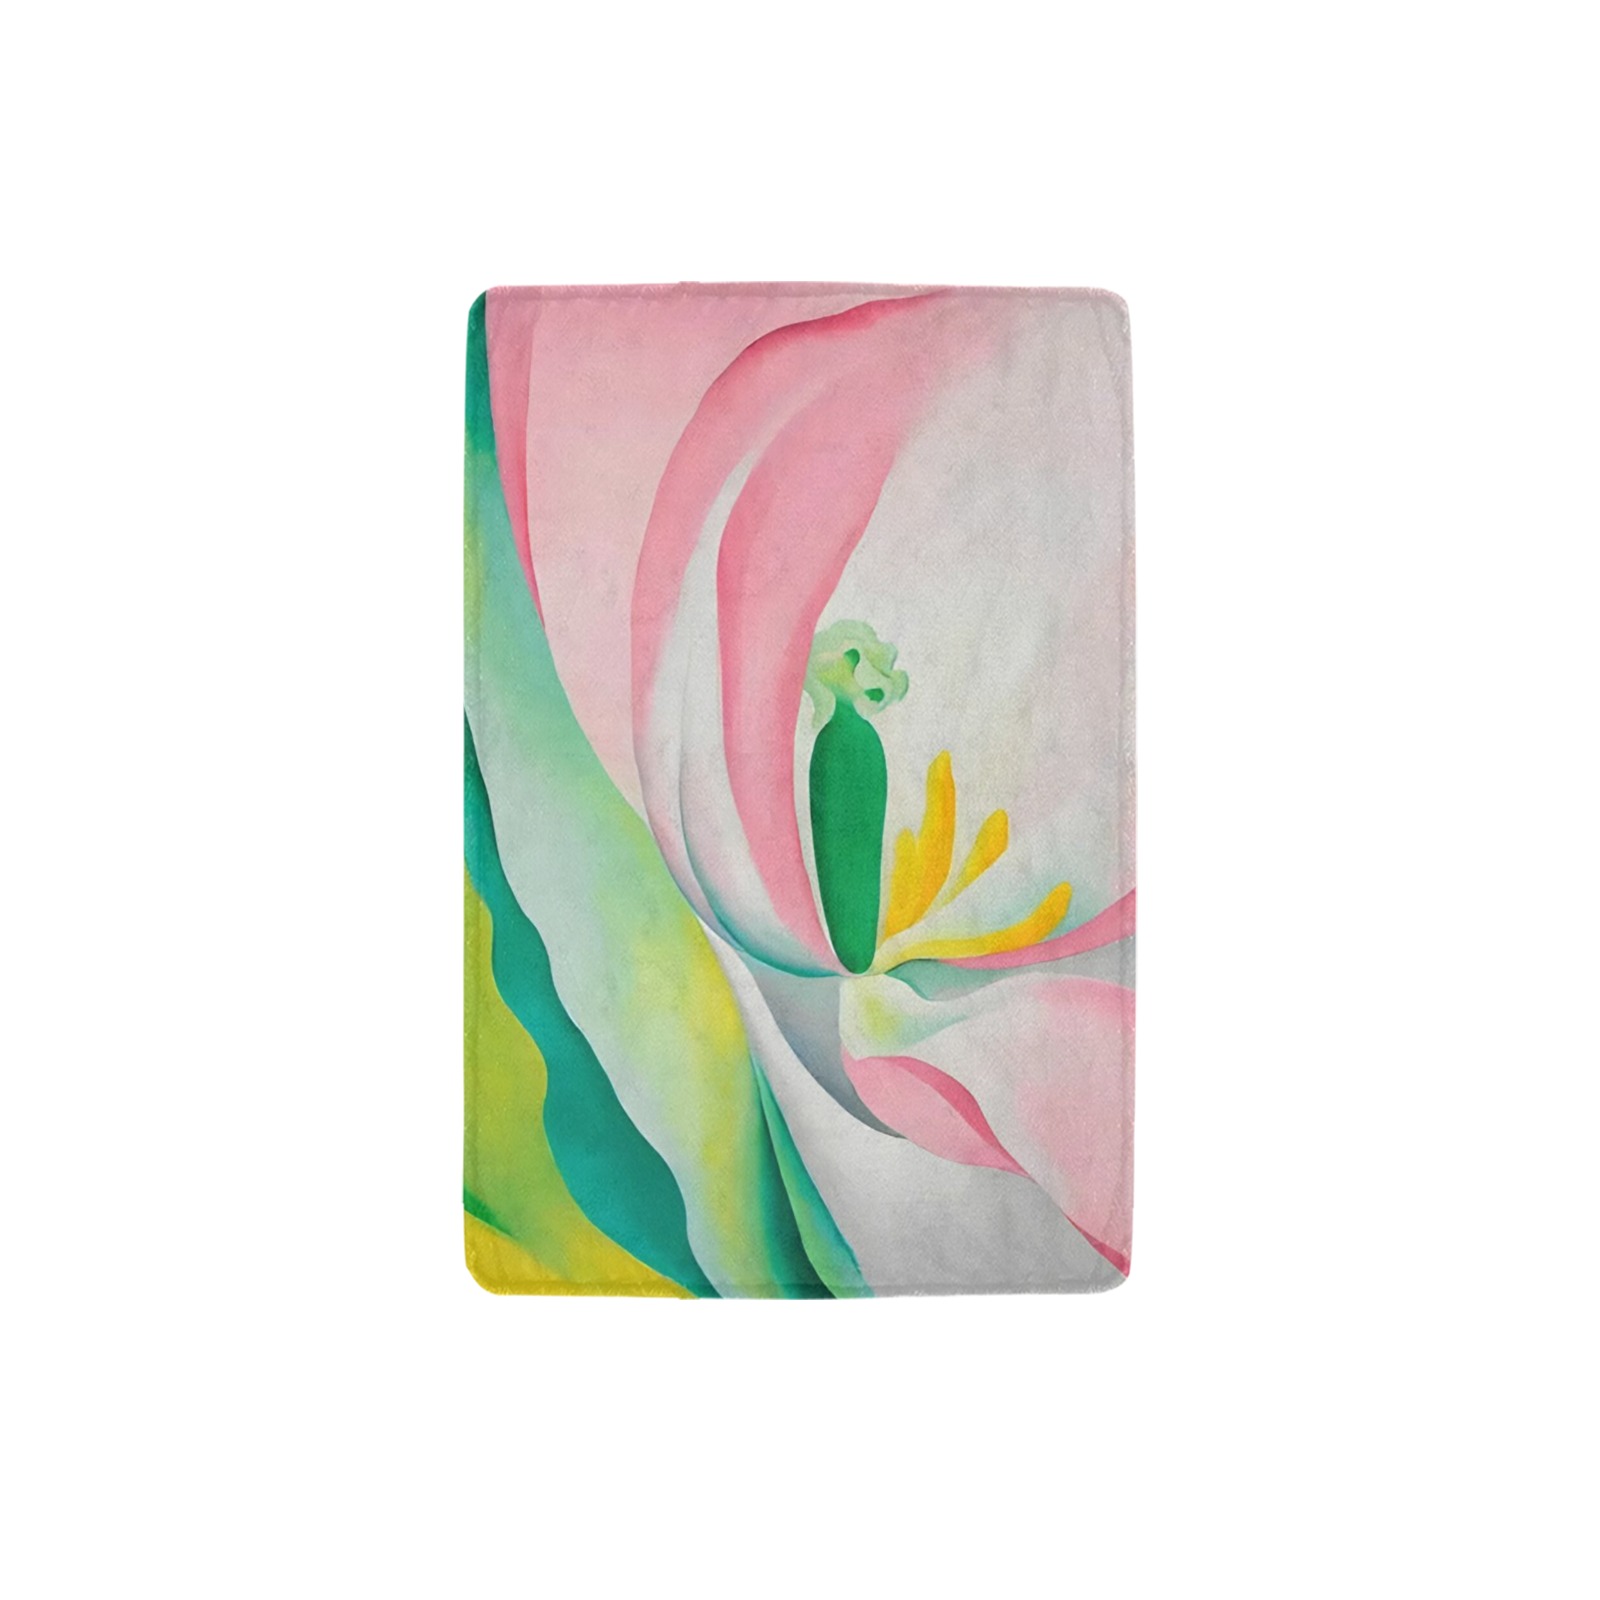 Georgia O'Keeffe - Pink Tulipe Ultra-Soft Micro Fleece Blanket 32"x48"